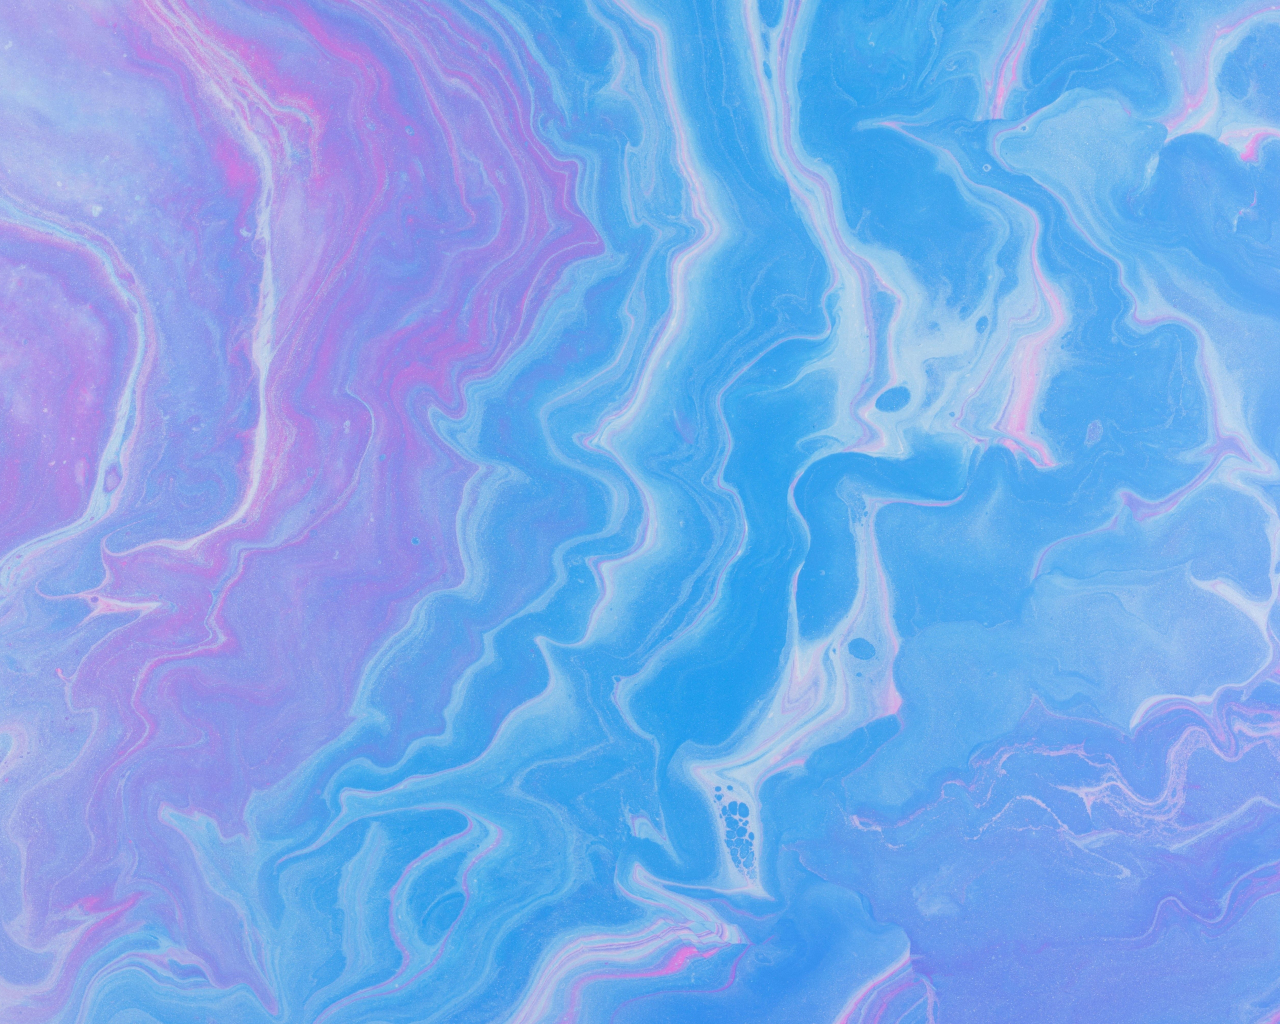 Download wallpaper 1280x1024 blue-pink, texture, art, standard 5:4 ...